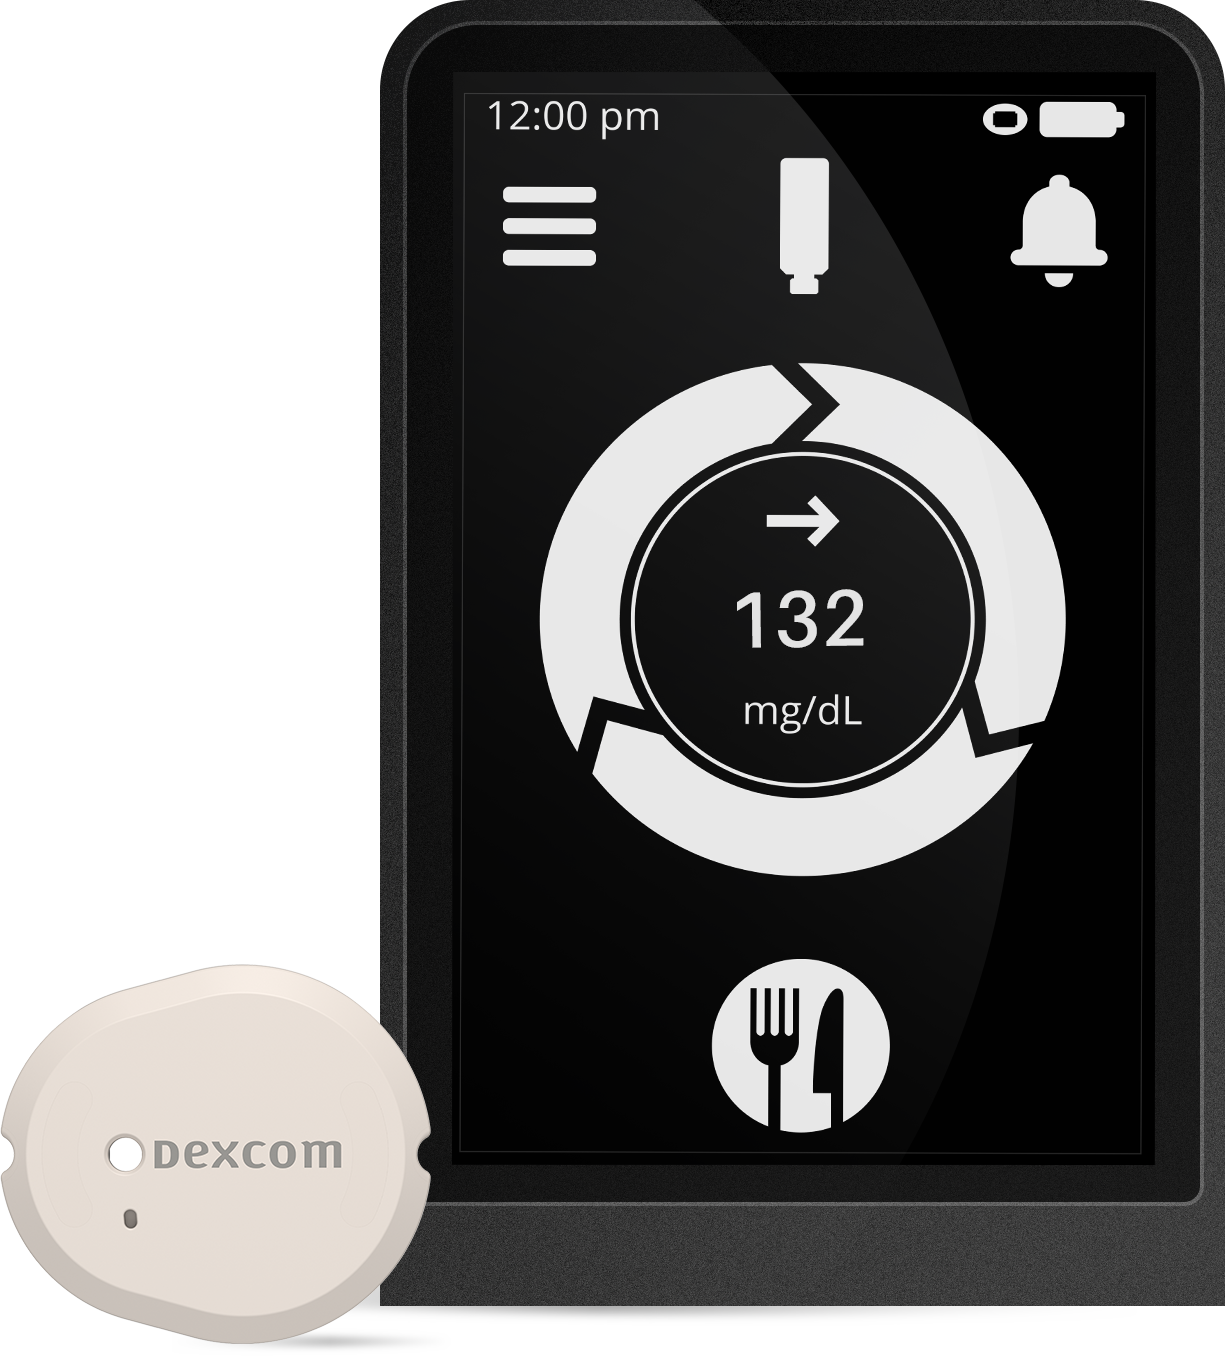 Dexcom G6 Review: No Fingersticks & 10-Day Sensor